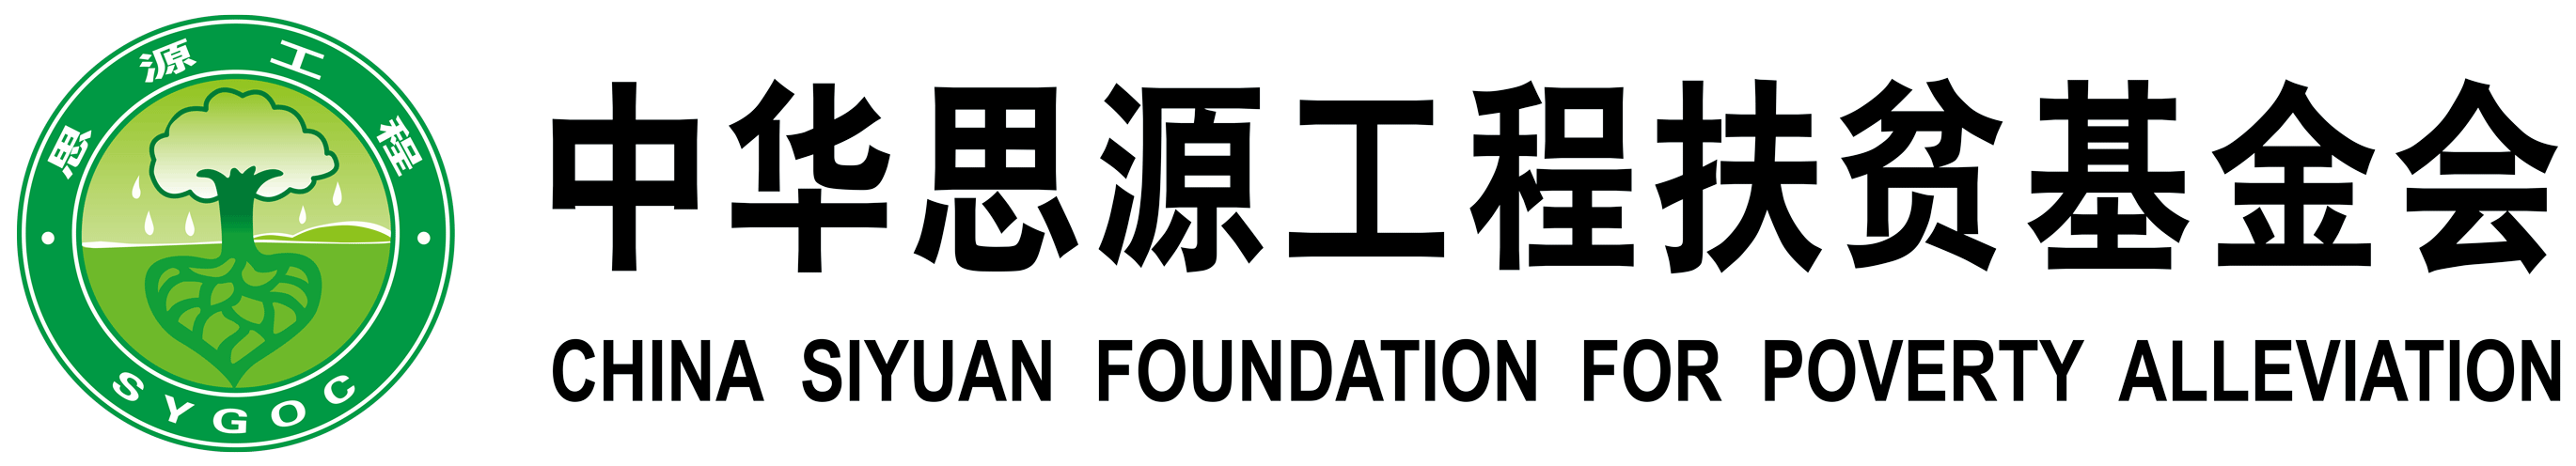 中华思源工程扶贫基金会